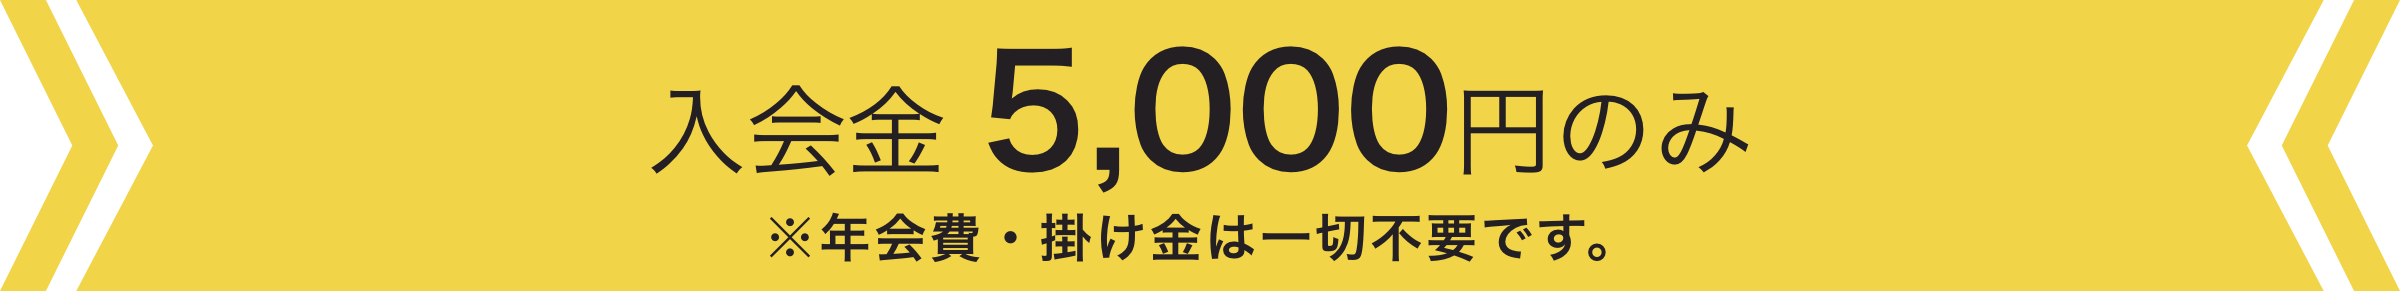 入会金5,000円のみで、年会費・掛け金は一切不要です。